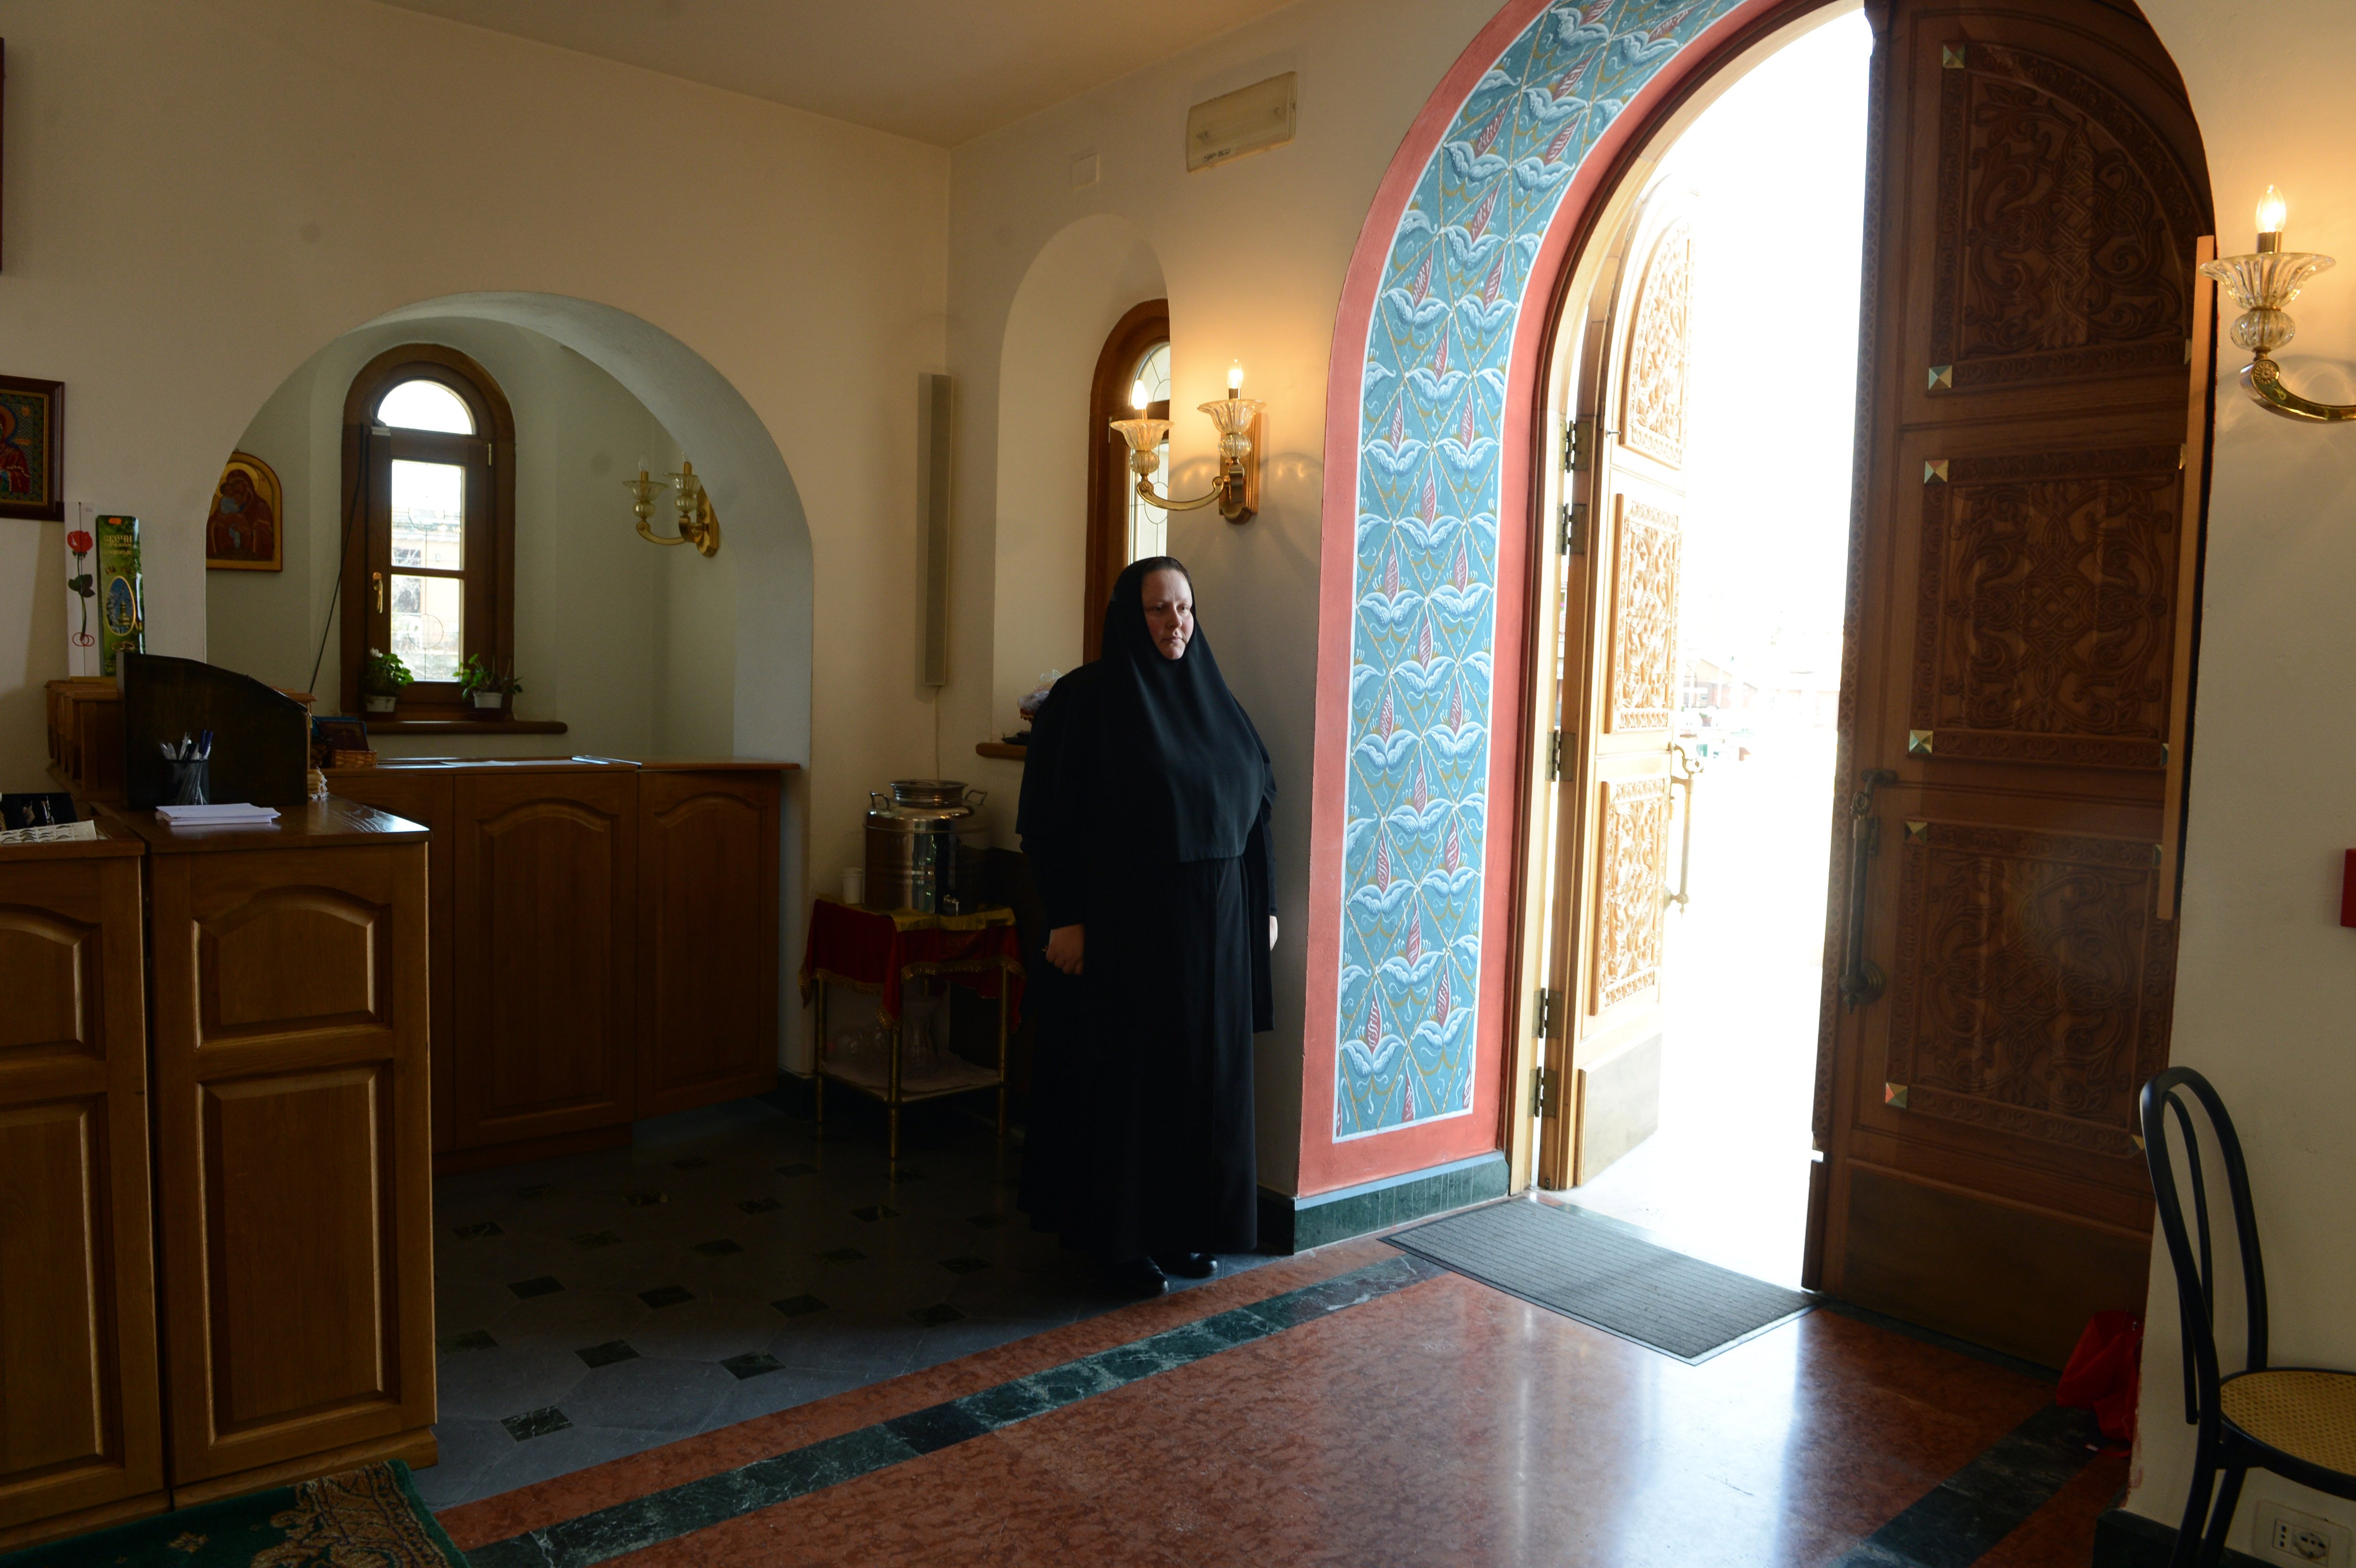 Папа смотрит из окна на православных